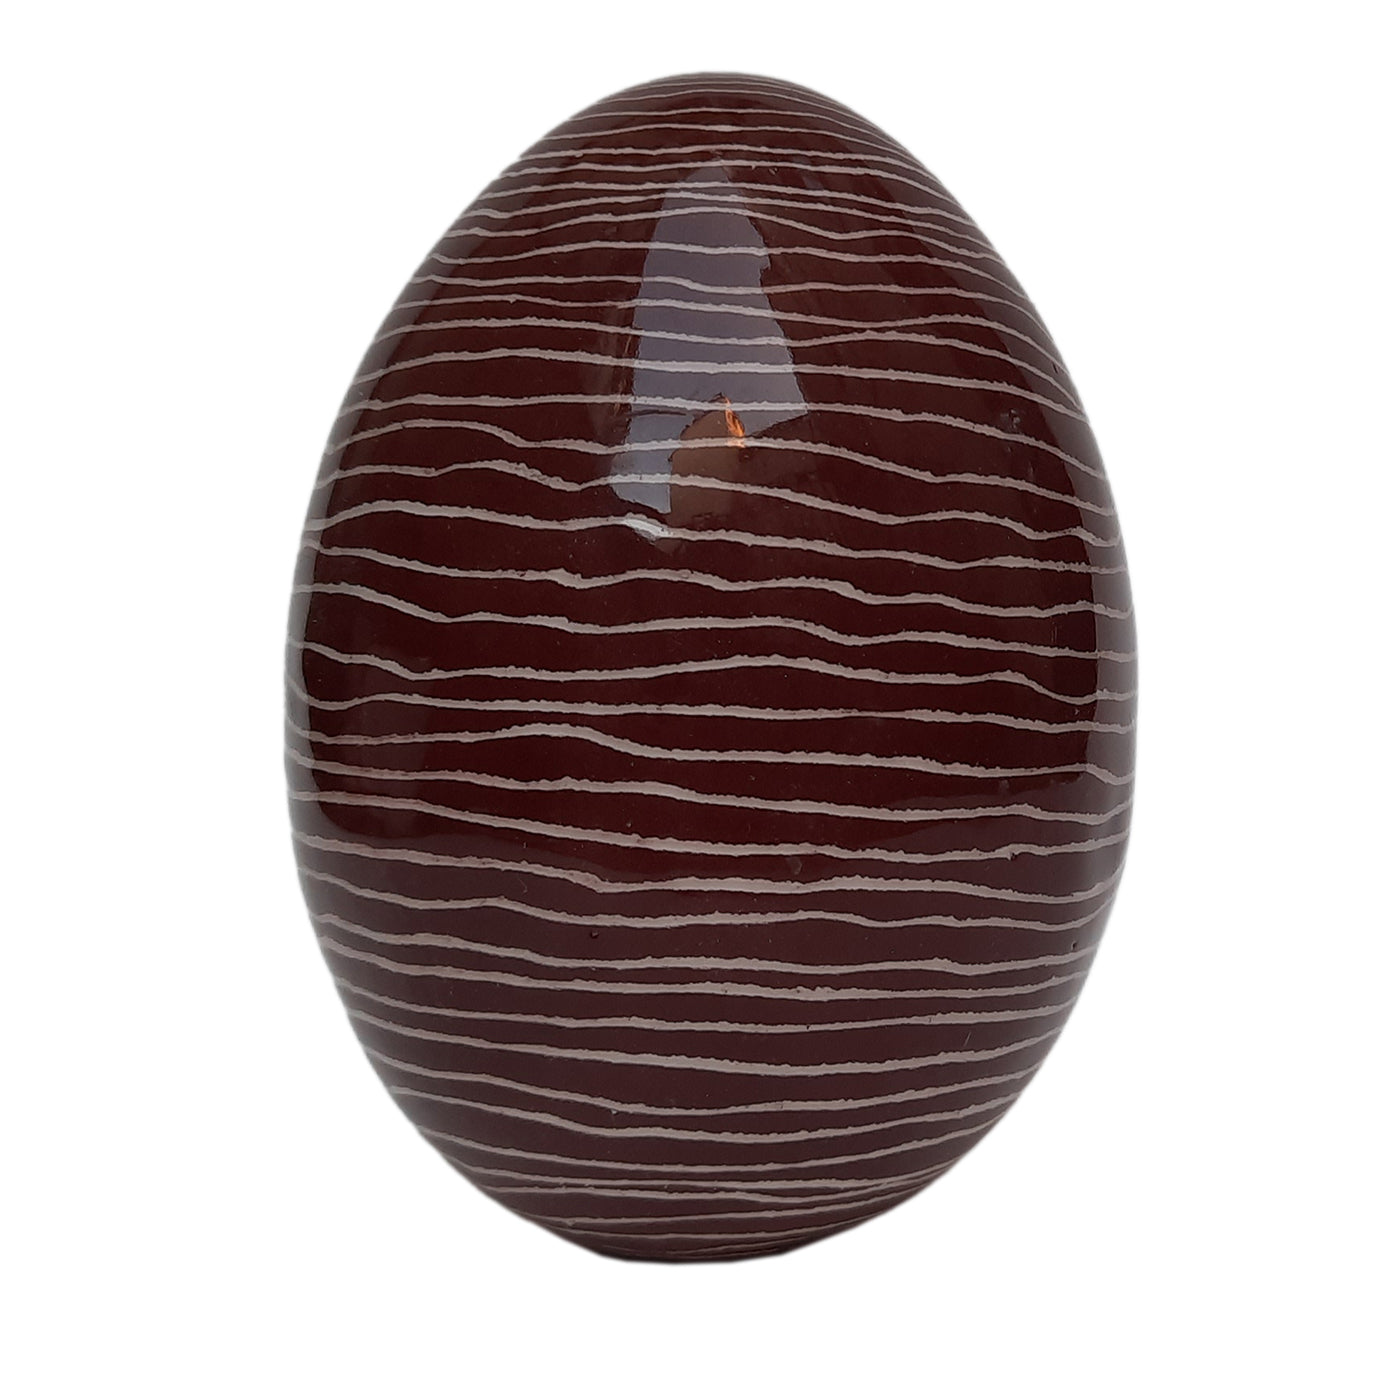 Se Questo E' Un Uovo Brown Decorative Egg - Main view